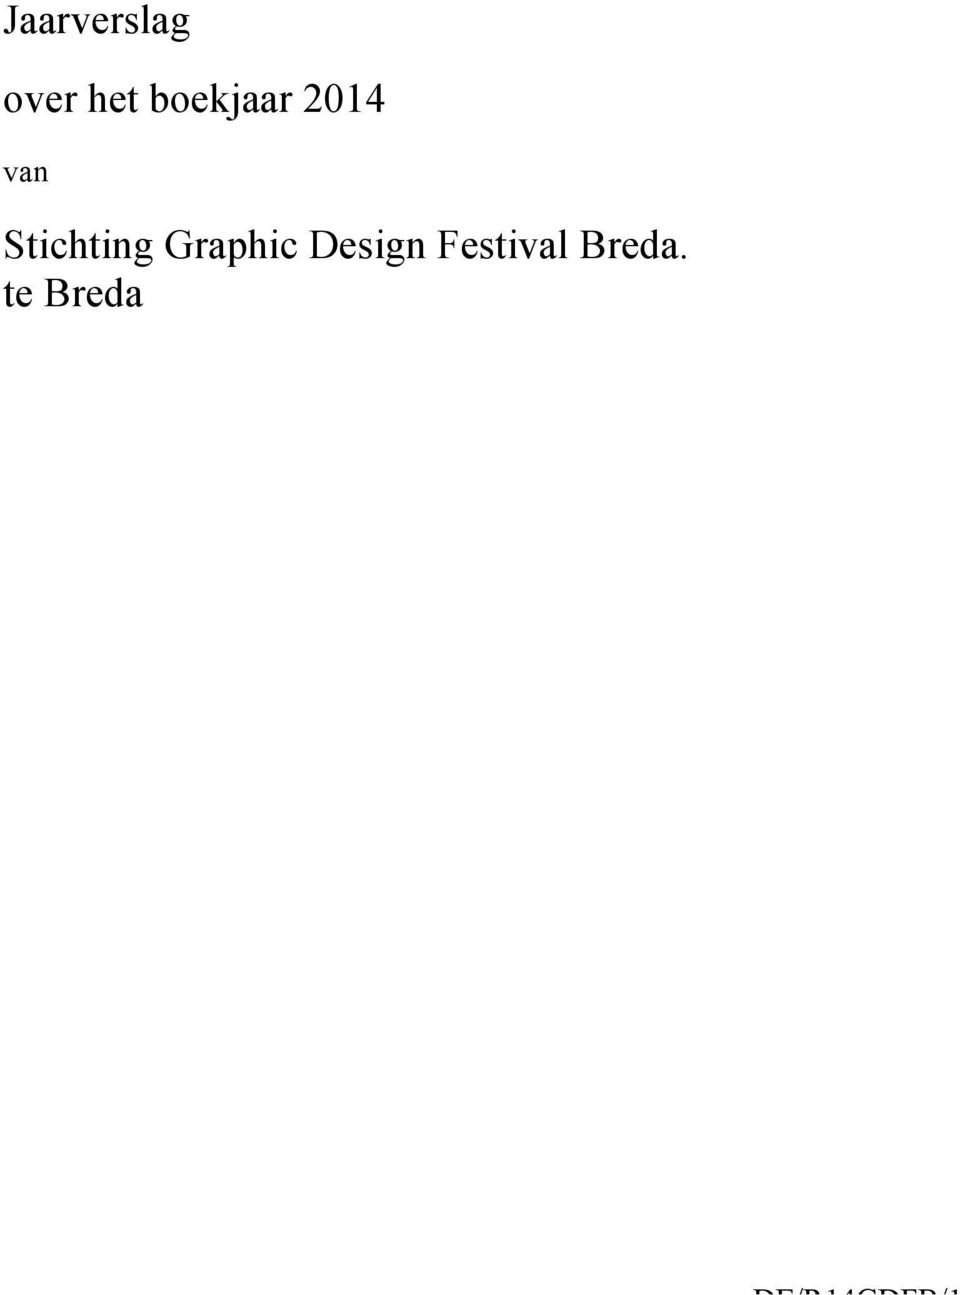 Stichting Graphic Design